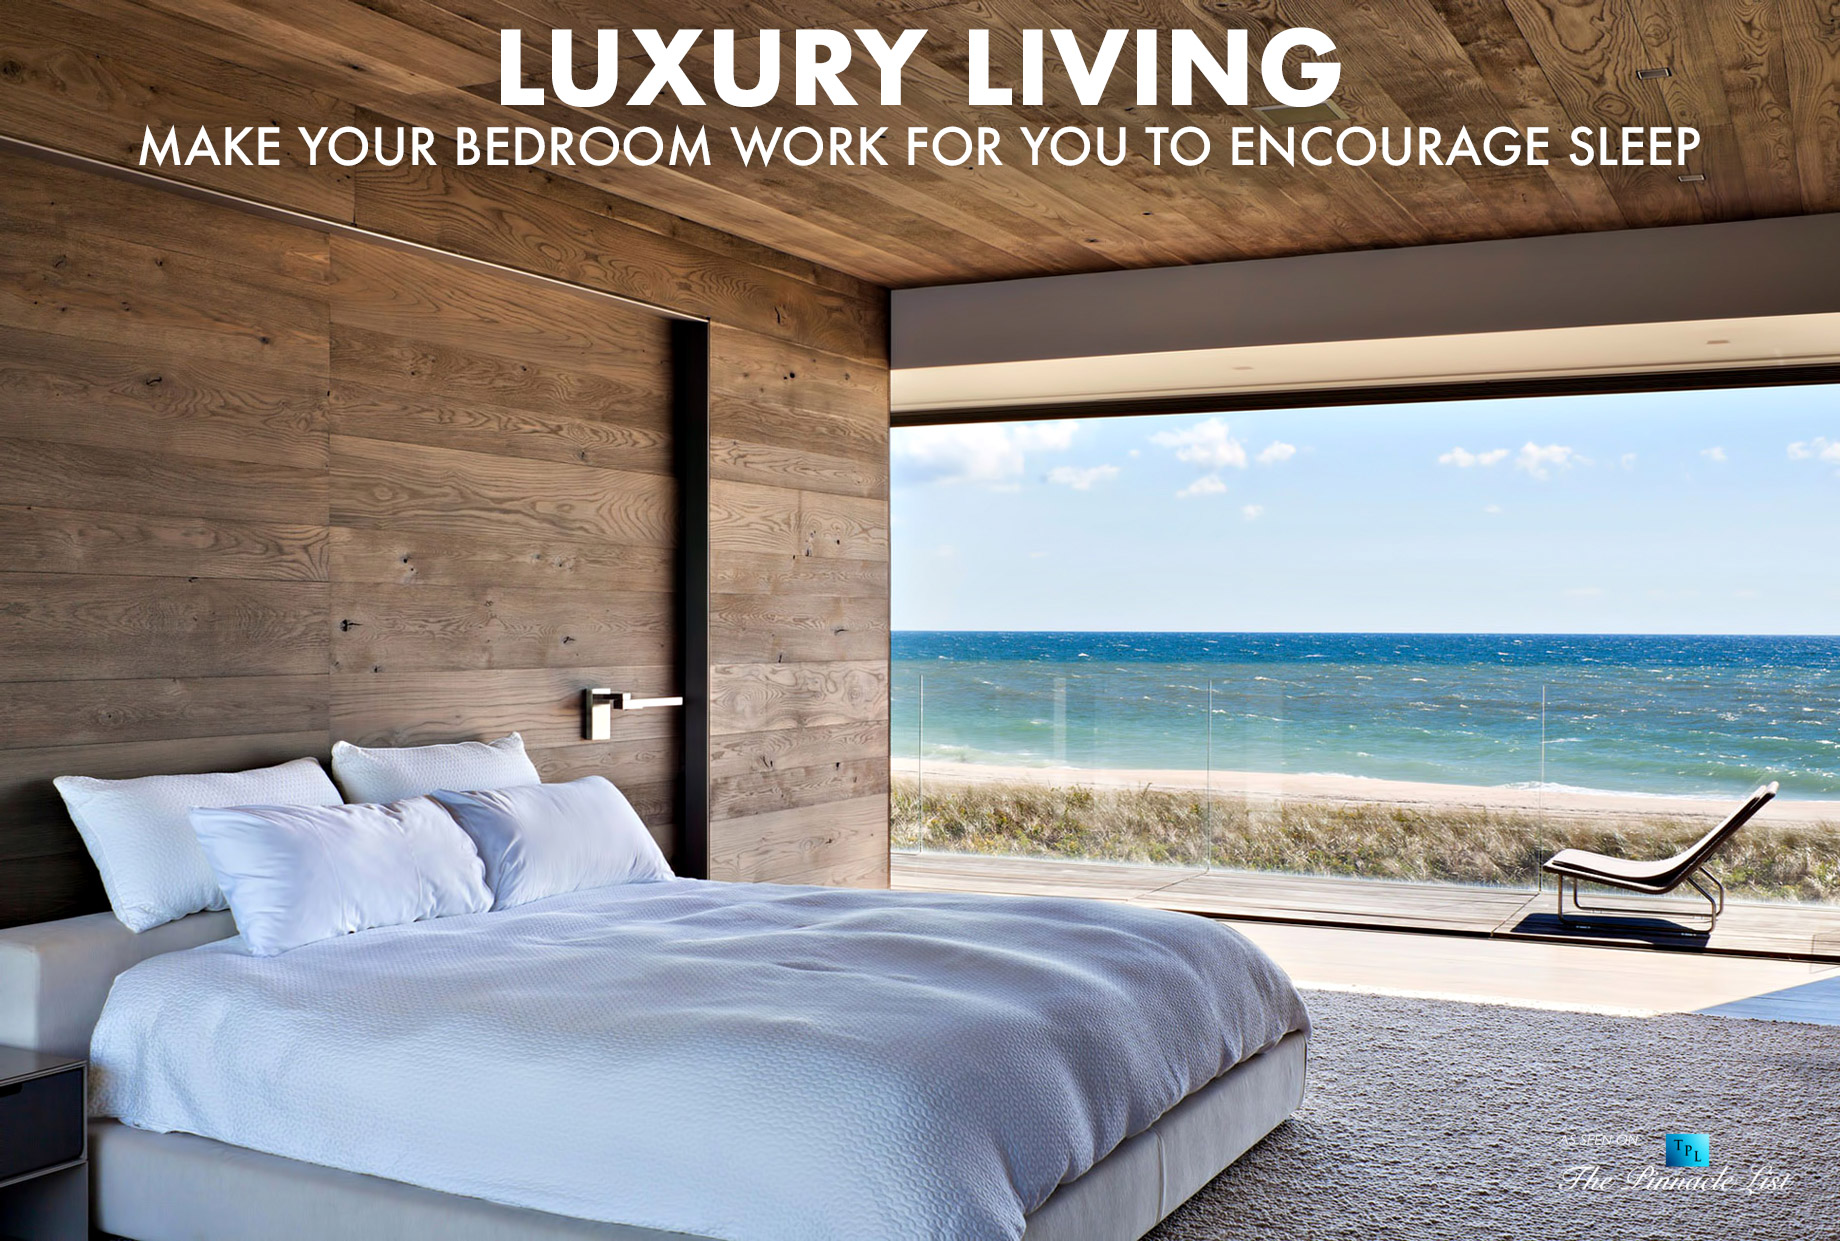 Luxury Living – Make Your Bedroom Work For You to Encourage Sleep